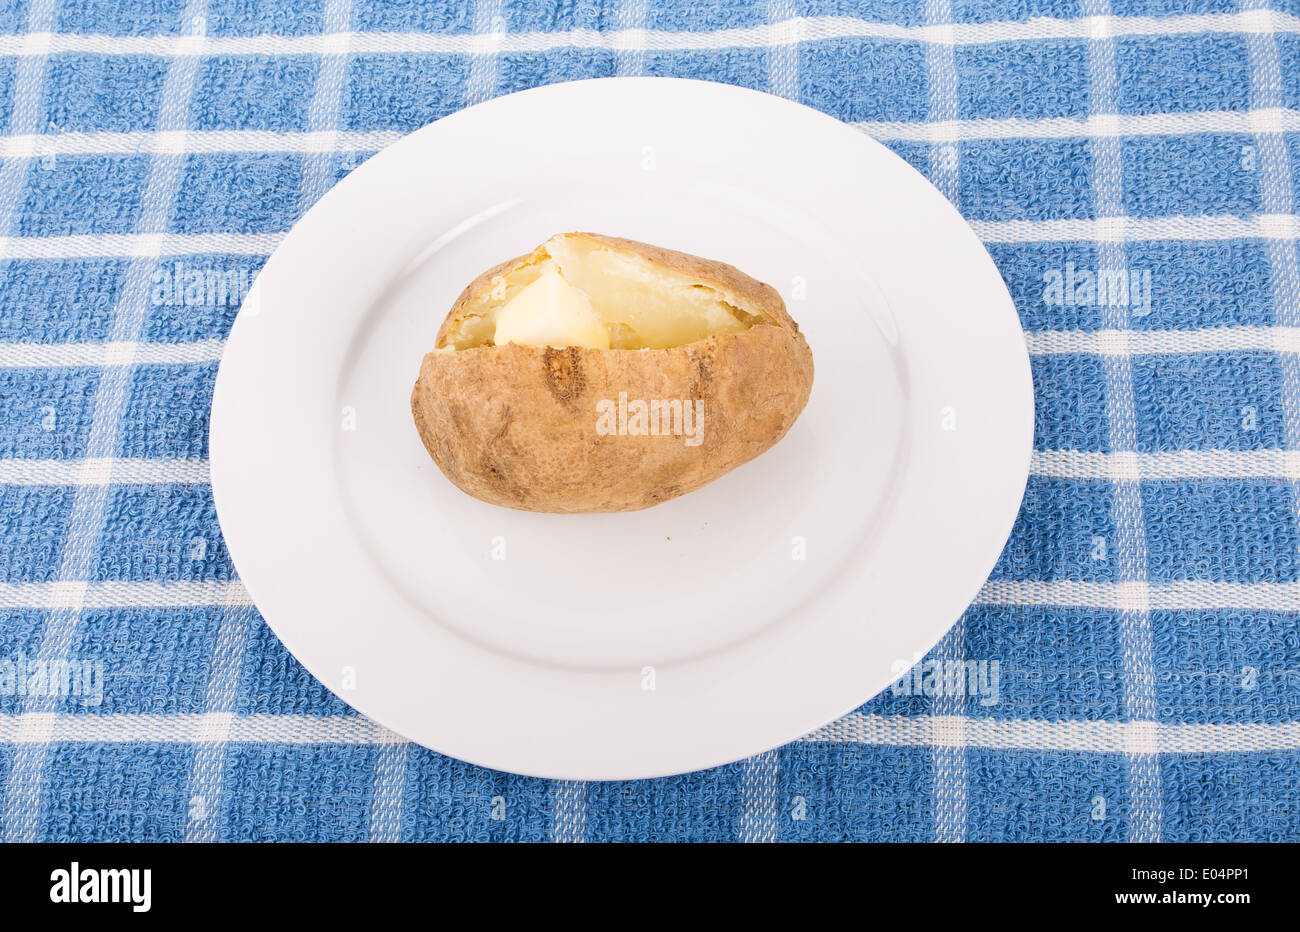 Une pomme de terre au four avec une noix de beurre sur une assiette blanche et bleue serviette Banque D'Images